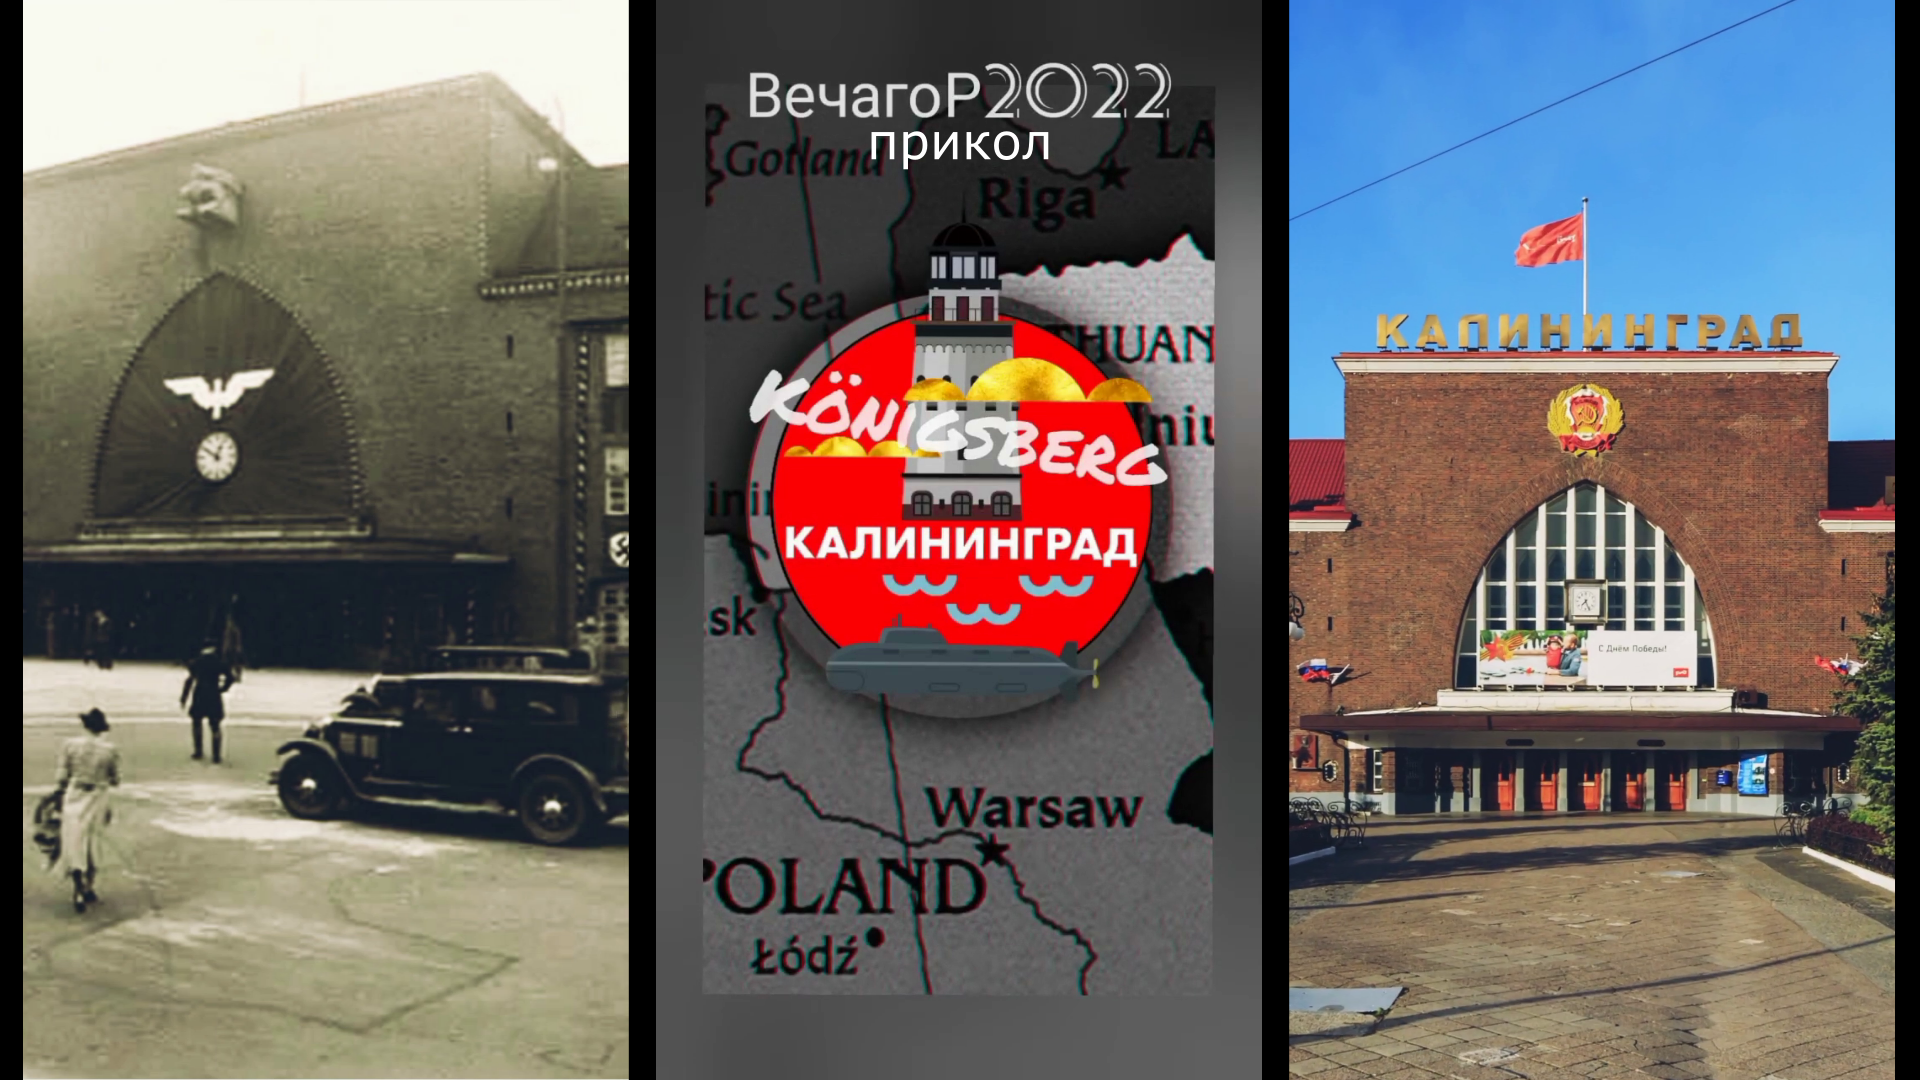 Здесь бои шли конкретные! 🚂 Южный ЖД вокзал Калининграда/Königsberg (20.08.2022) 🚂 ВечагоР.